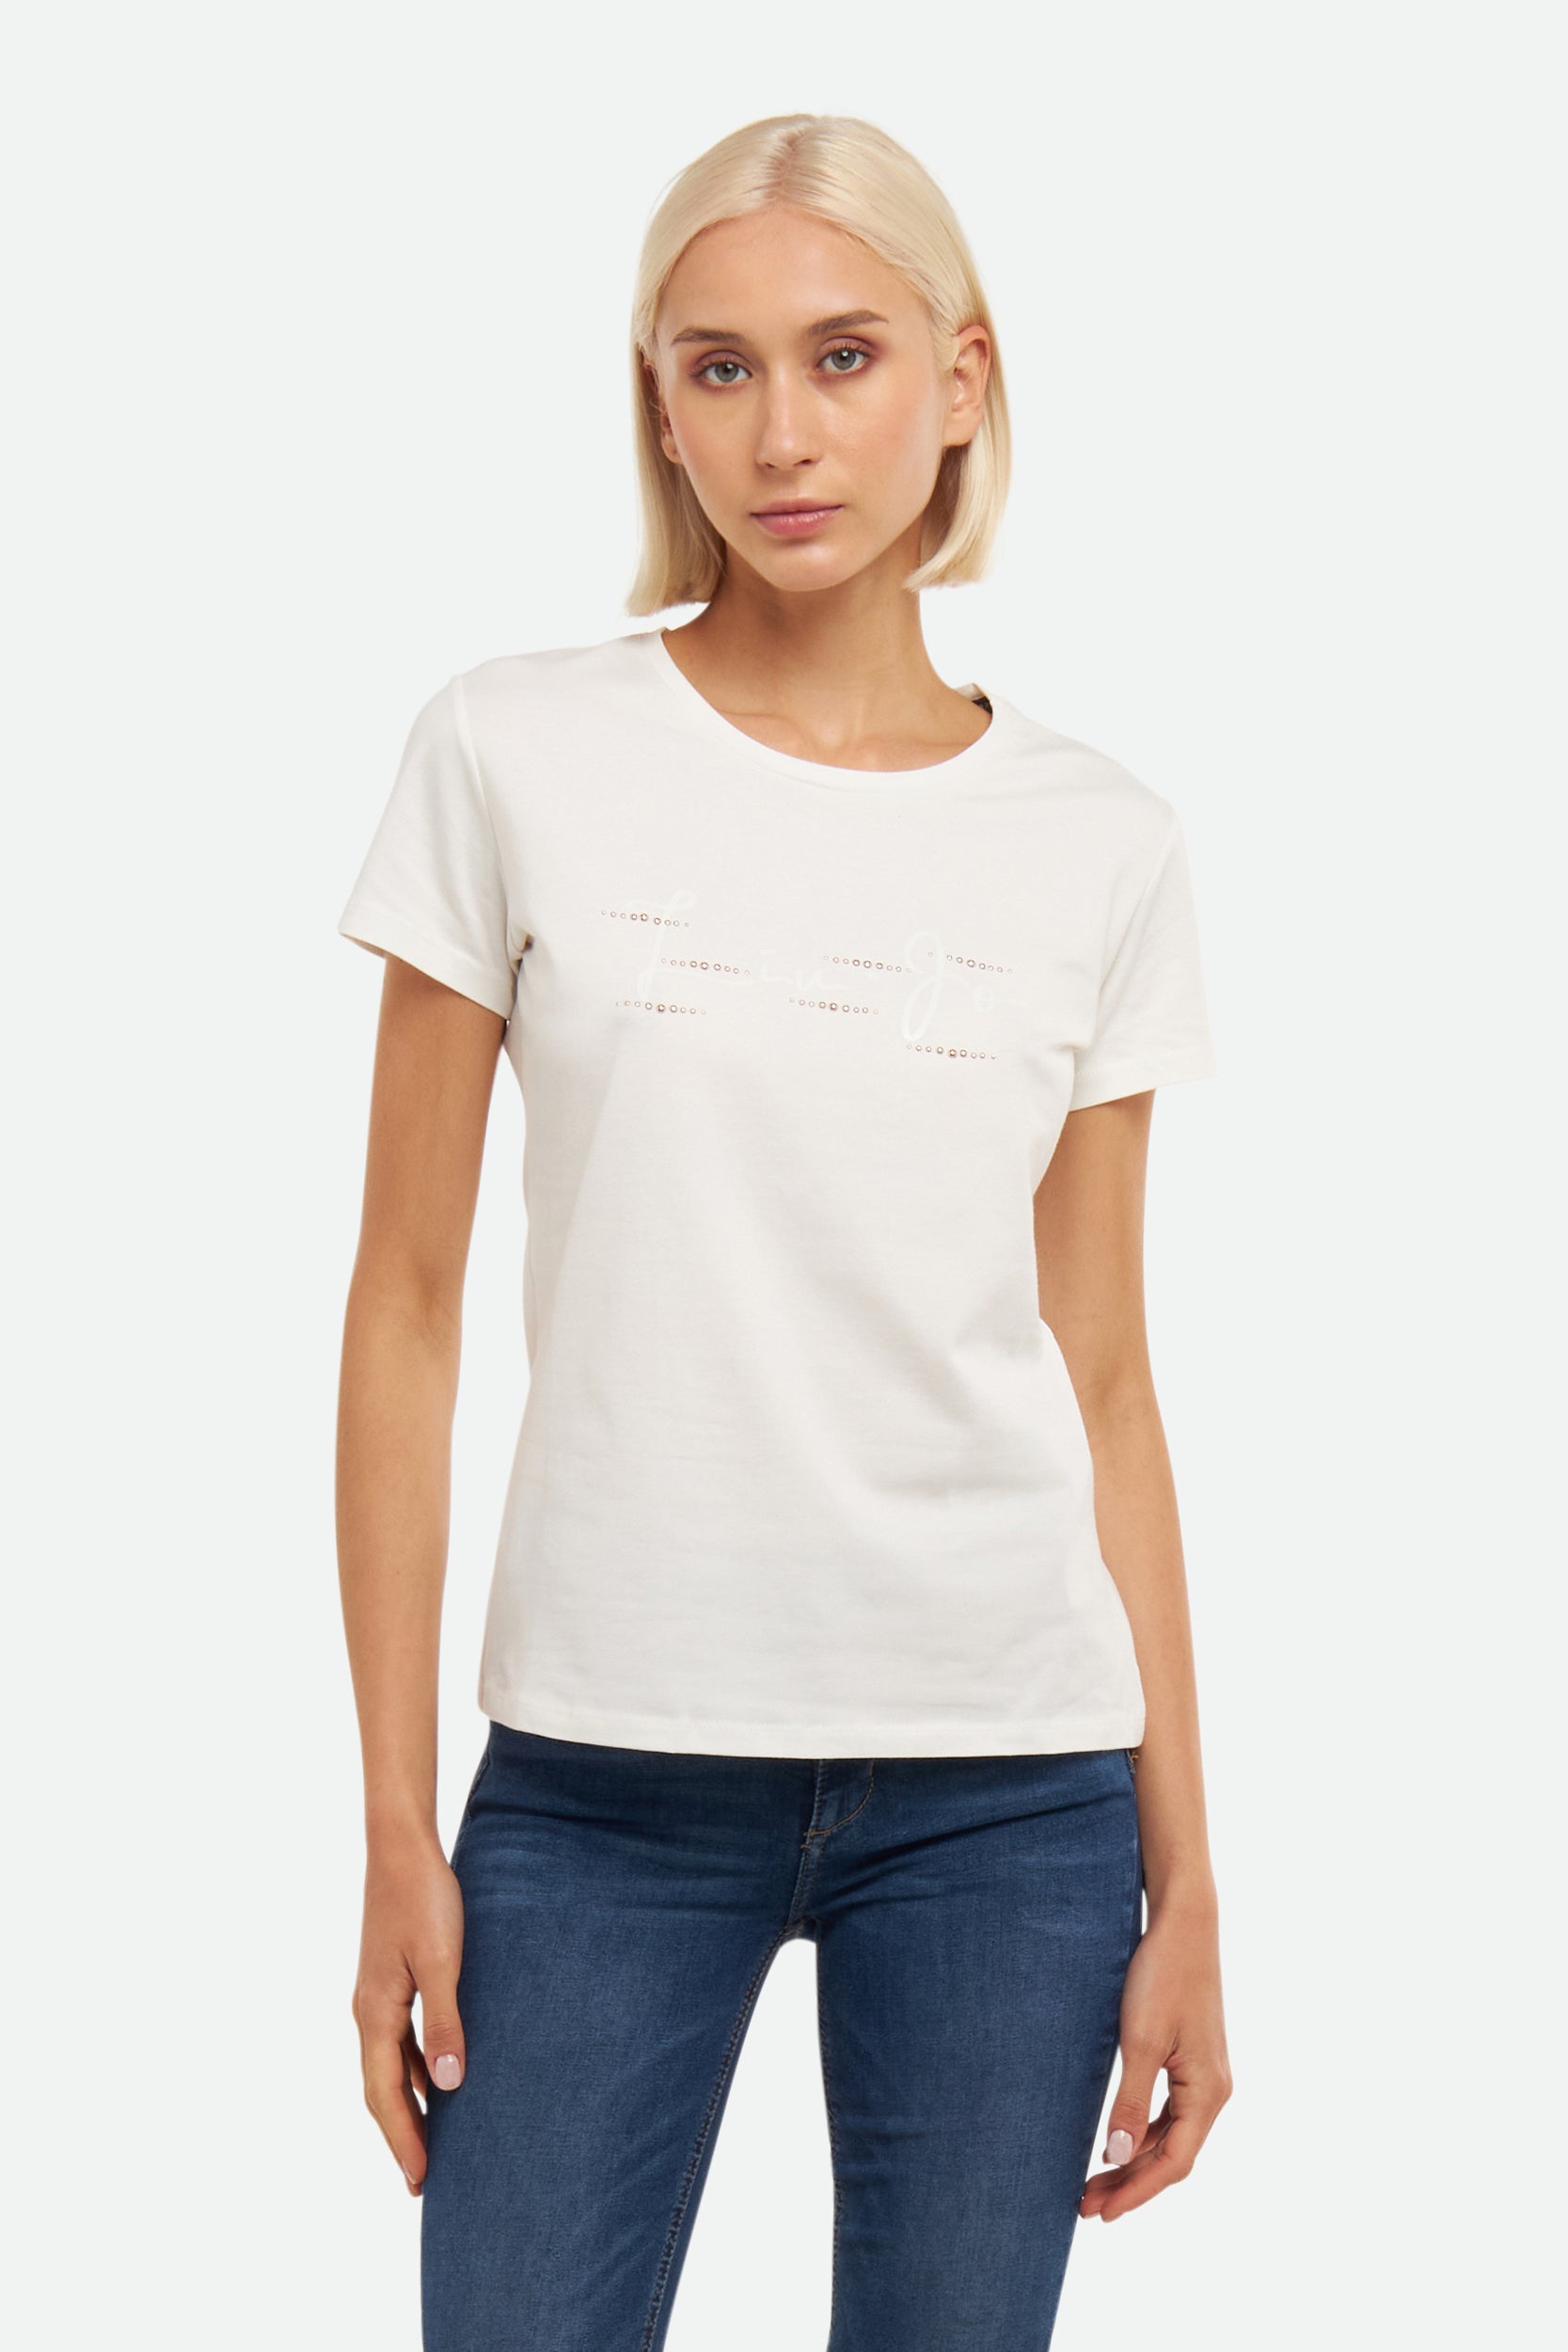 Liu Jo White T-Shirt